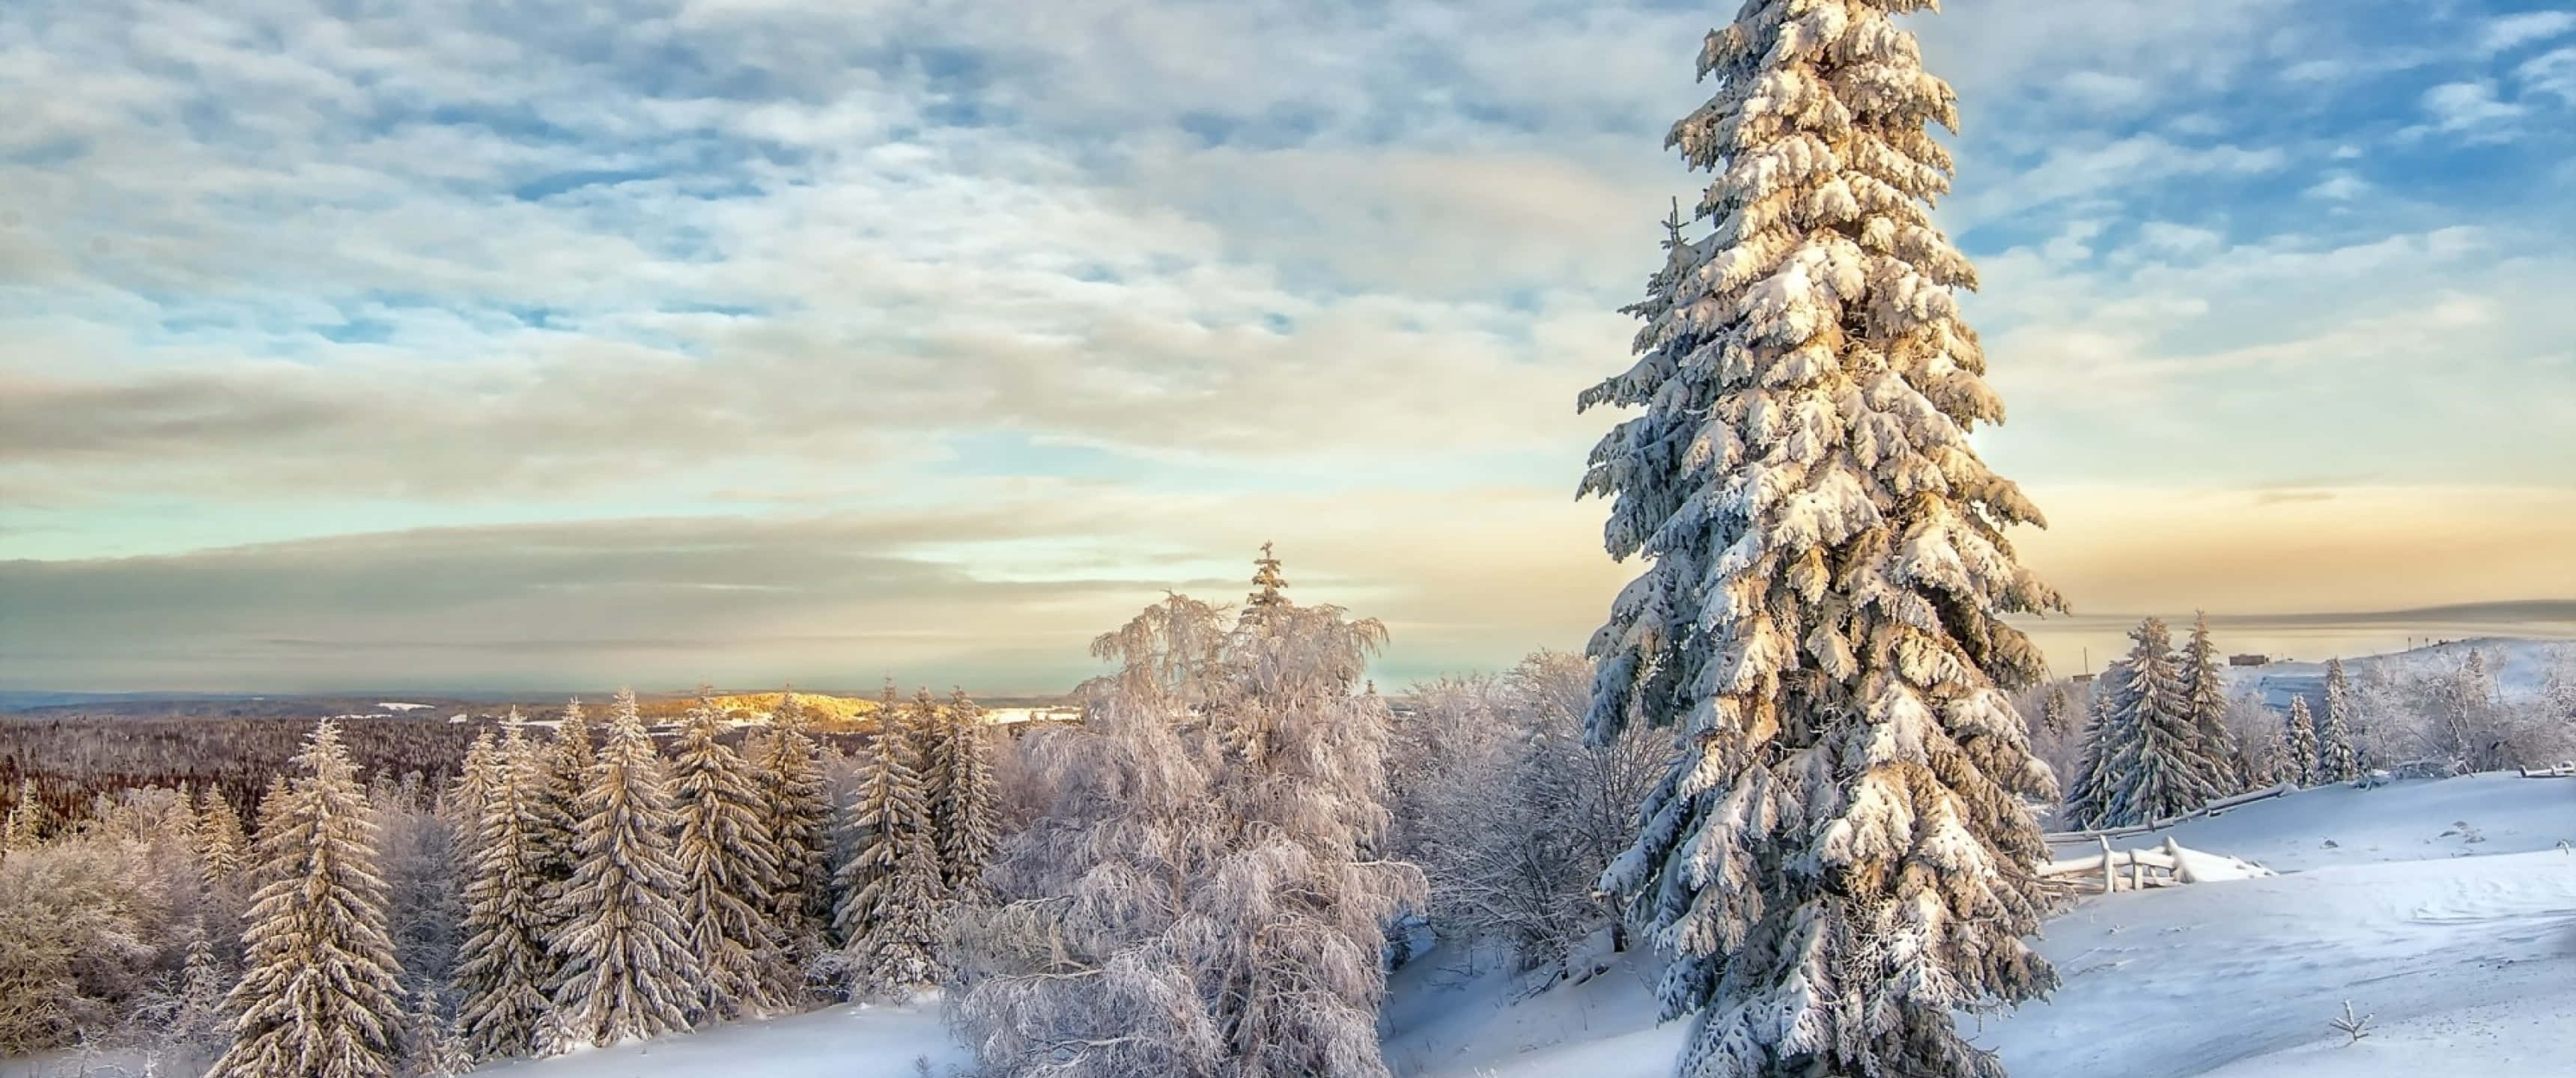 Пейзаж зимы. Фотограф Владимира Чуприков. Зимний пейзаж. Зимняя природа. Снежный пейзаж.